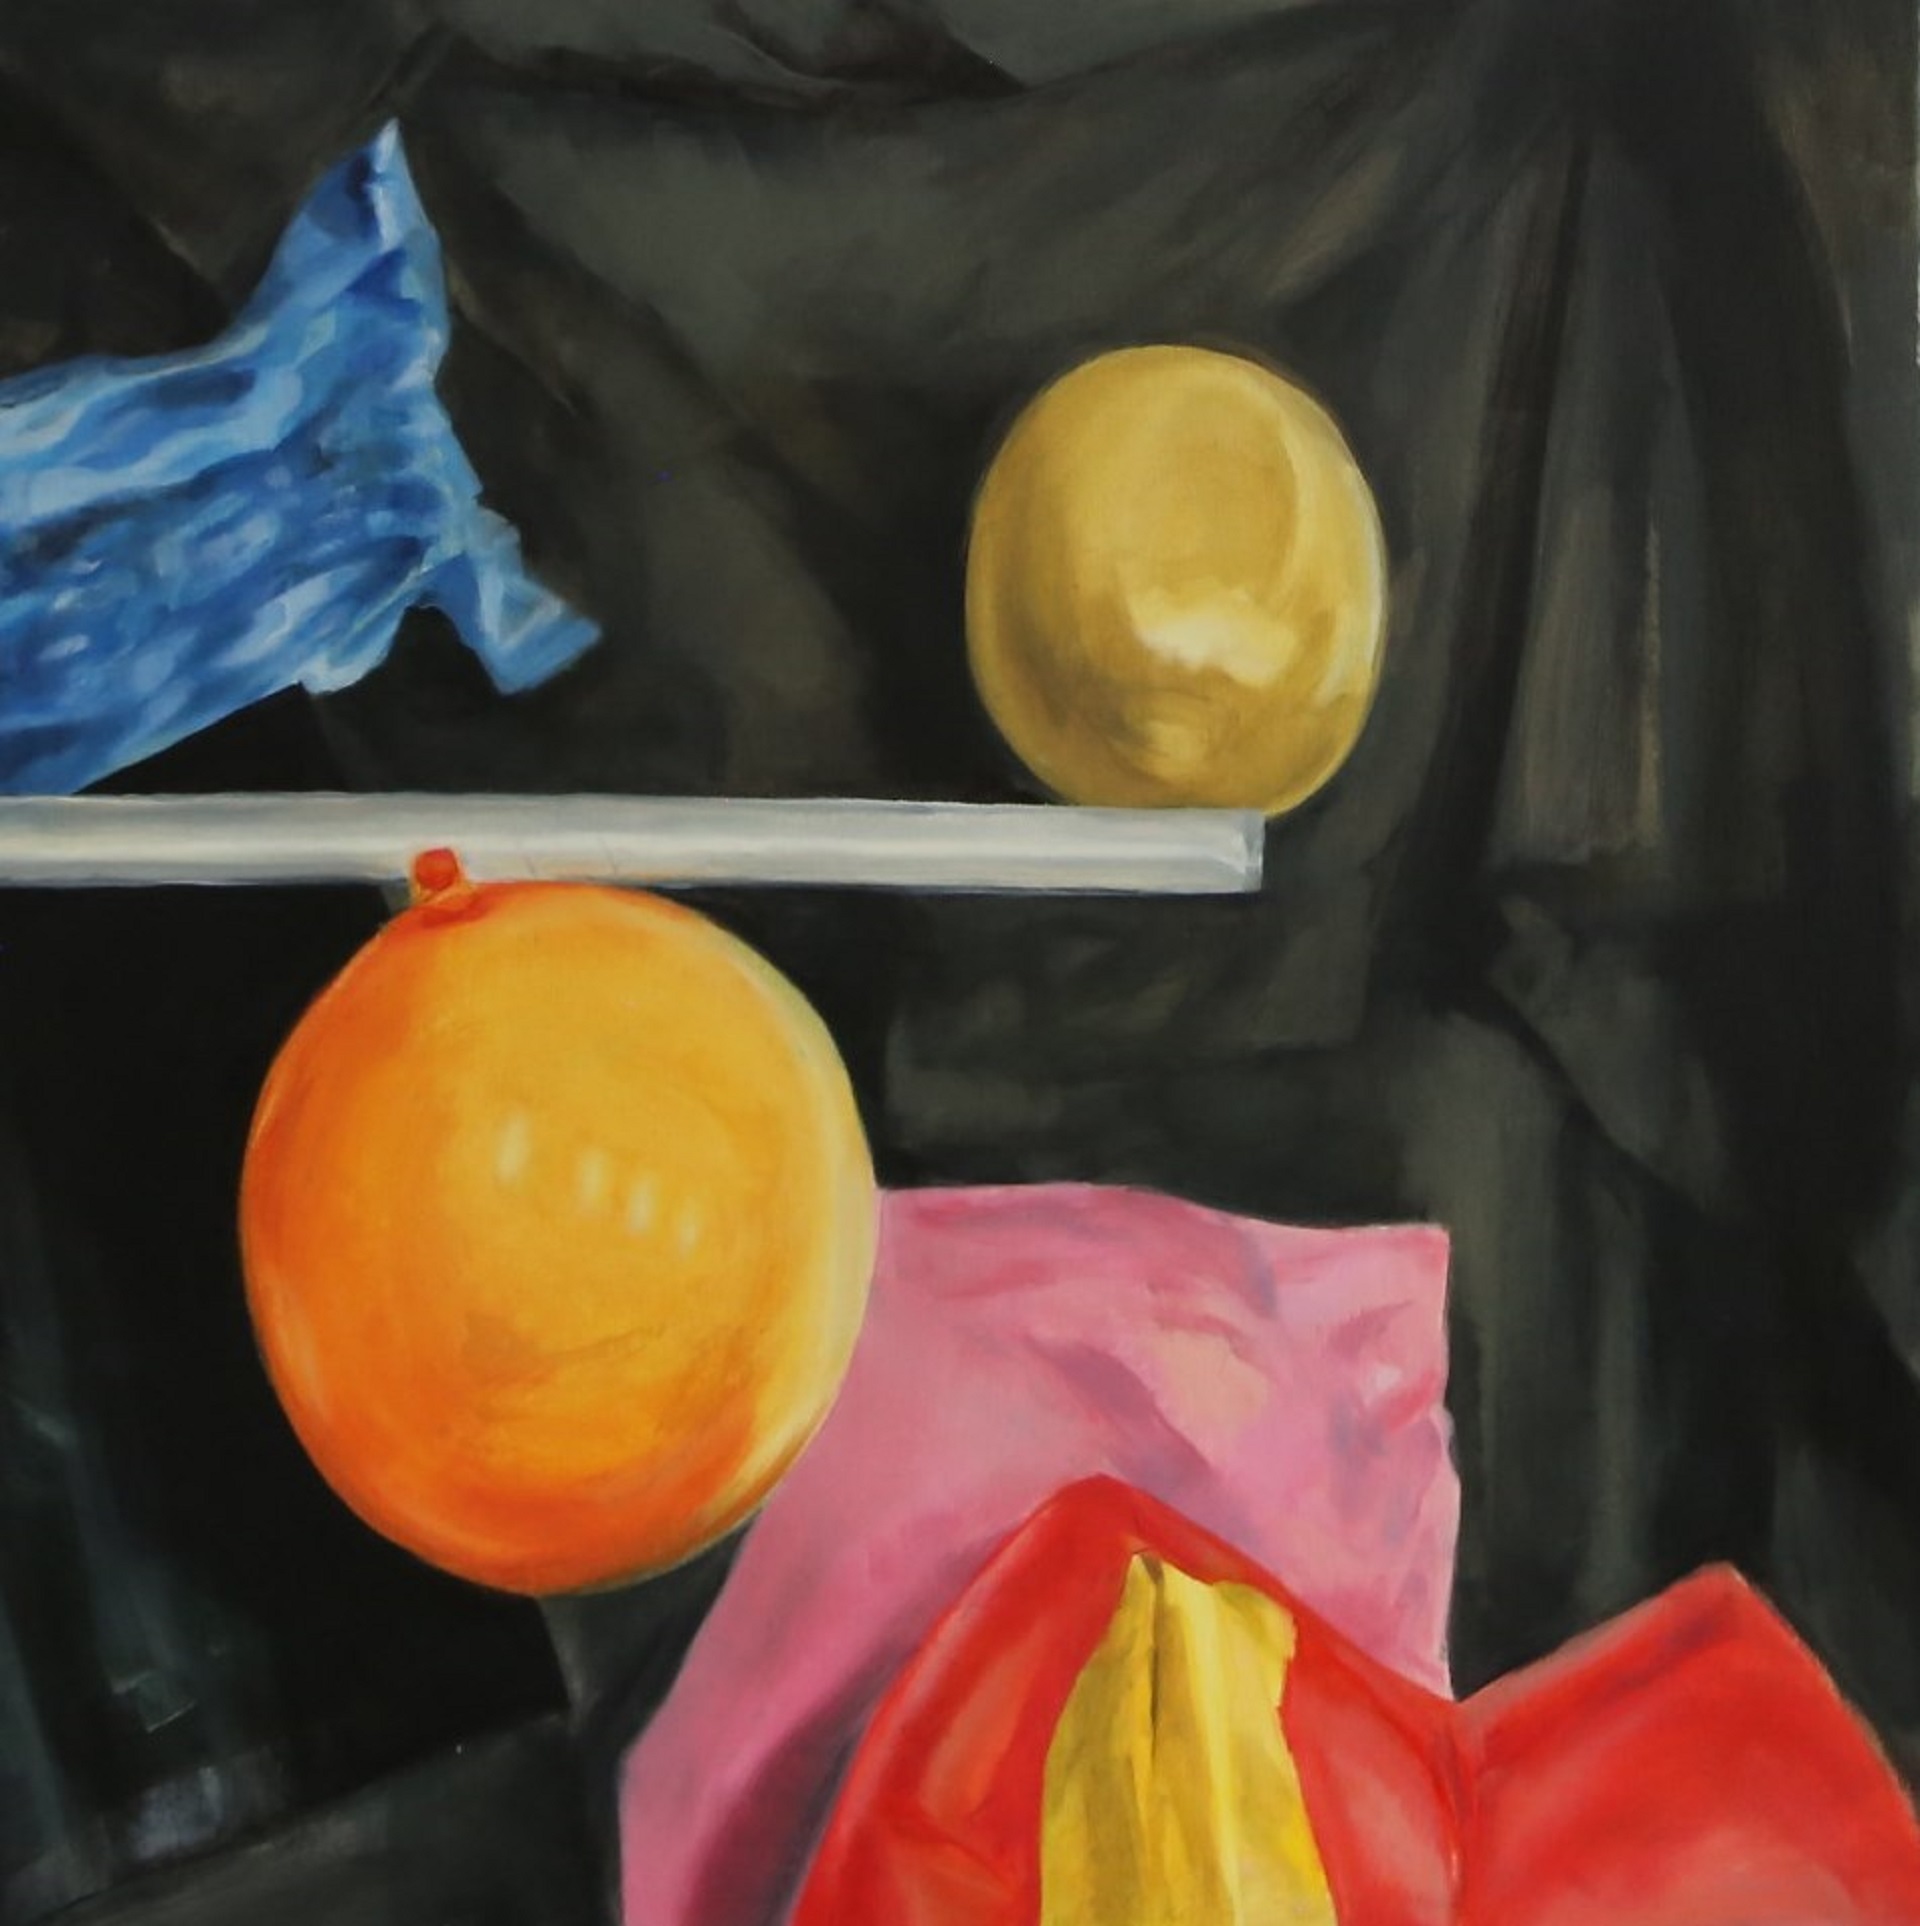 Obraz przedstawia dwa dmuchane balony o barwie oranżowej oraz żółtej. Obiekty usytuowane są na tle czarnej draperii wraz z kilkoma kolorowymi elementami.